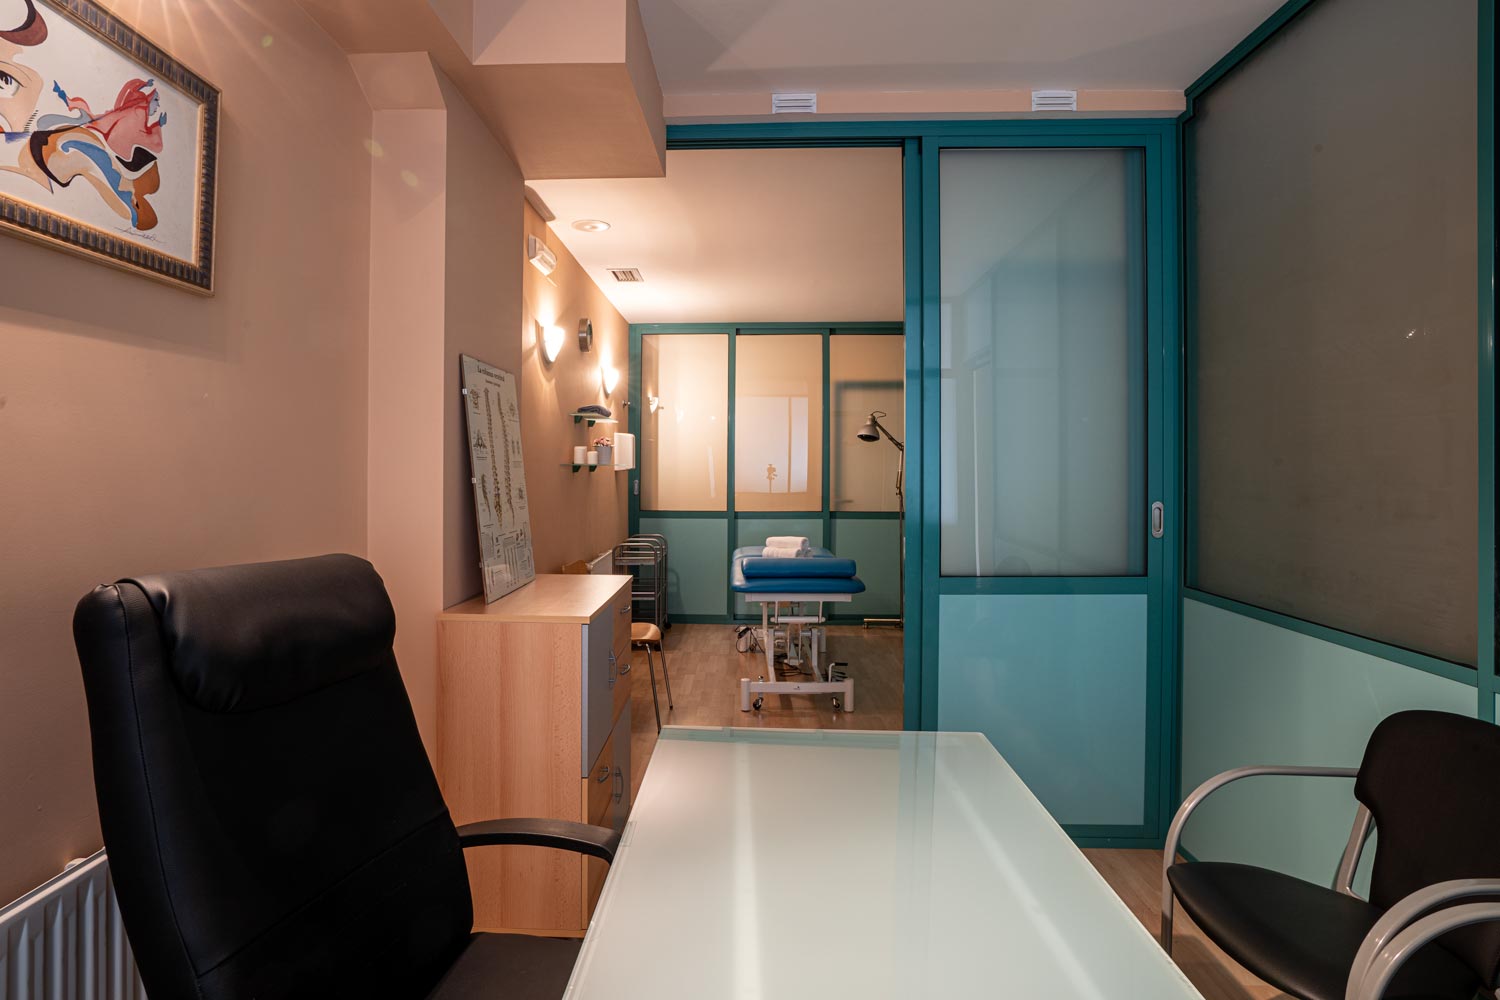 Interior de local comercial terapias naturales. Vemos el despacho y un gabinete con camilla azul comunicados por puertas verdes abiertas